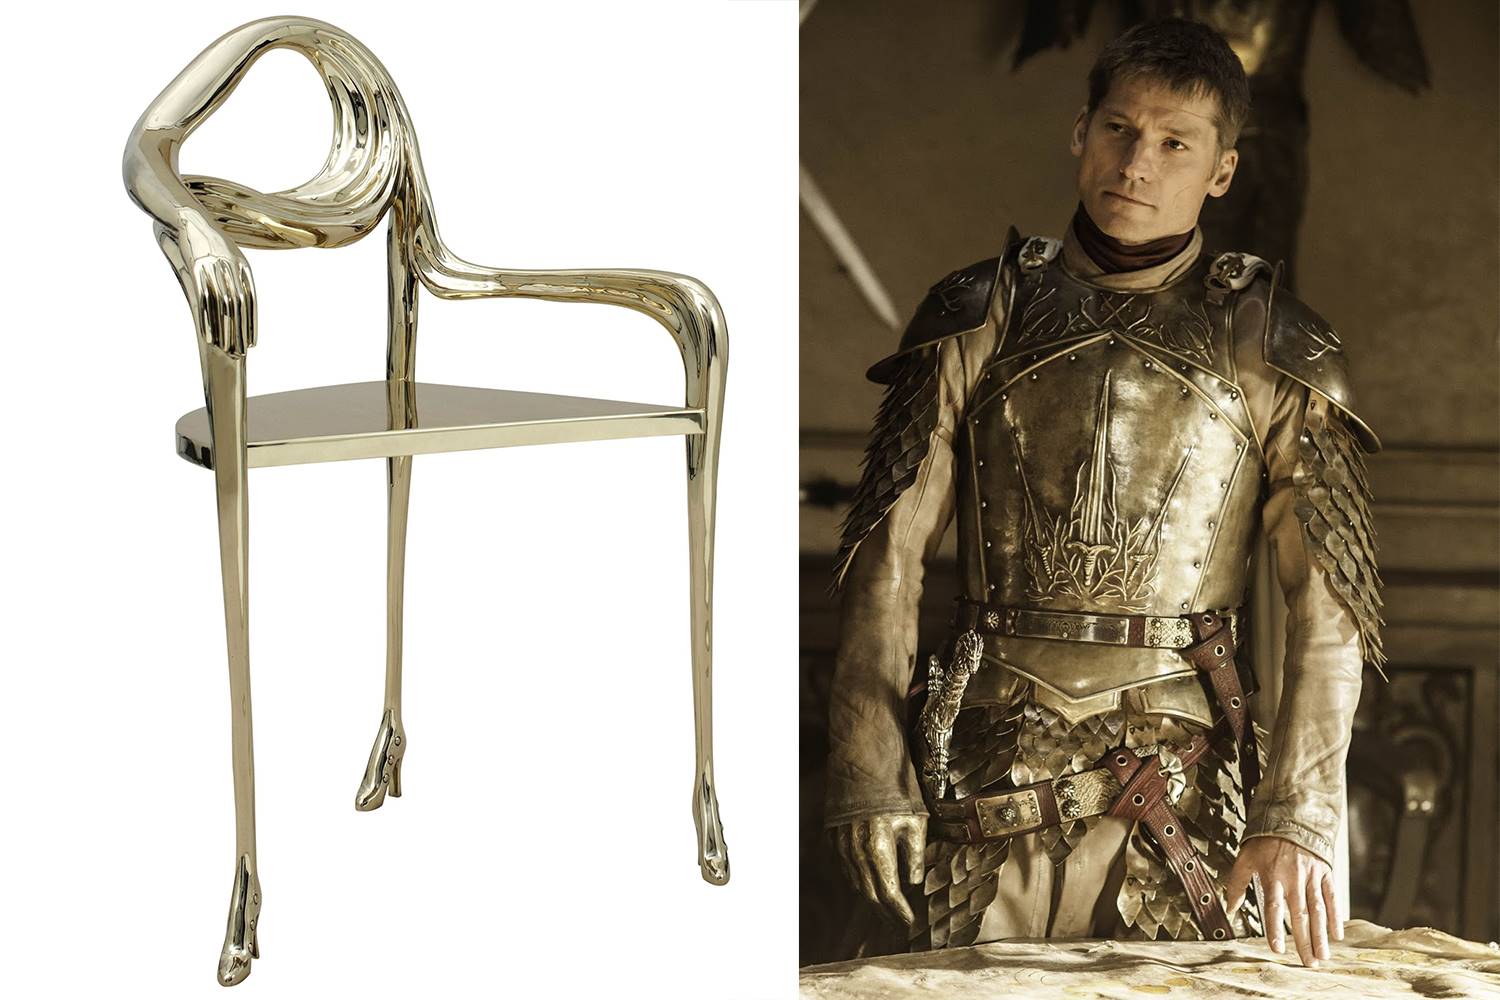 Jaime Lannister Juego de Tronos Gaudi BD Barcelona Design. [ ] Jaime Lannister